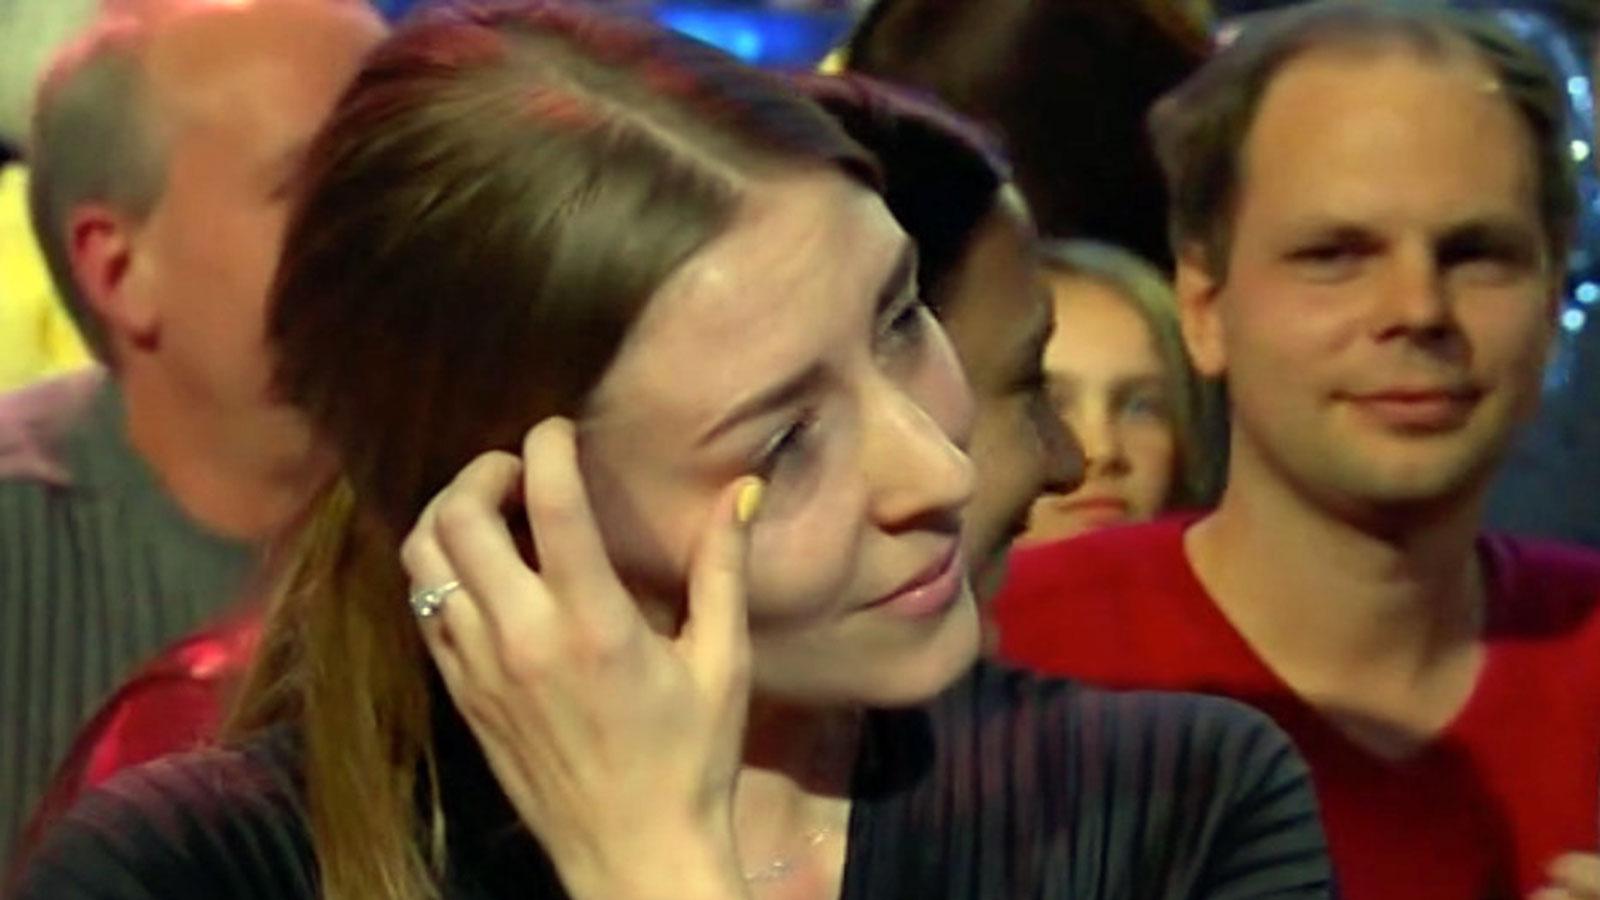 Andreas Weises flickvän Sofie torkar tårar efter sången.